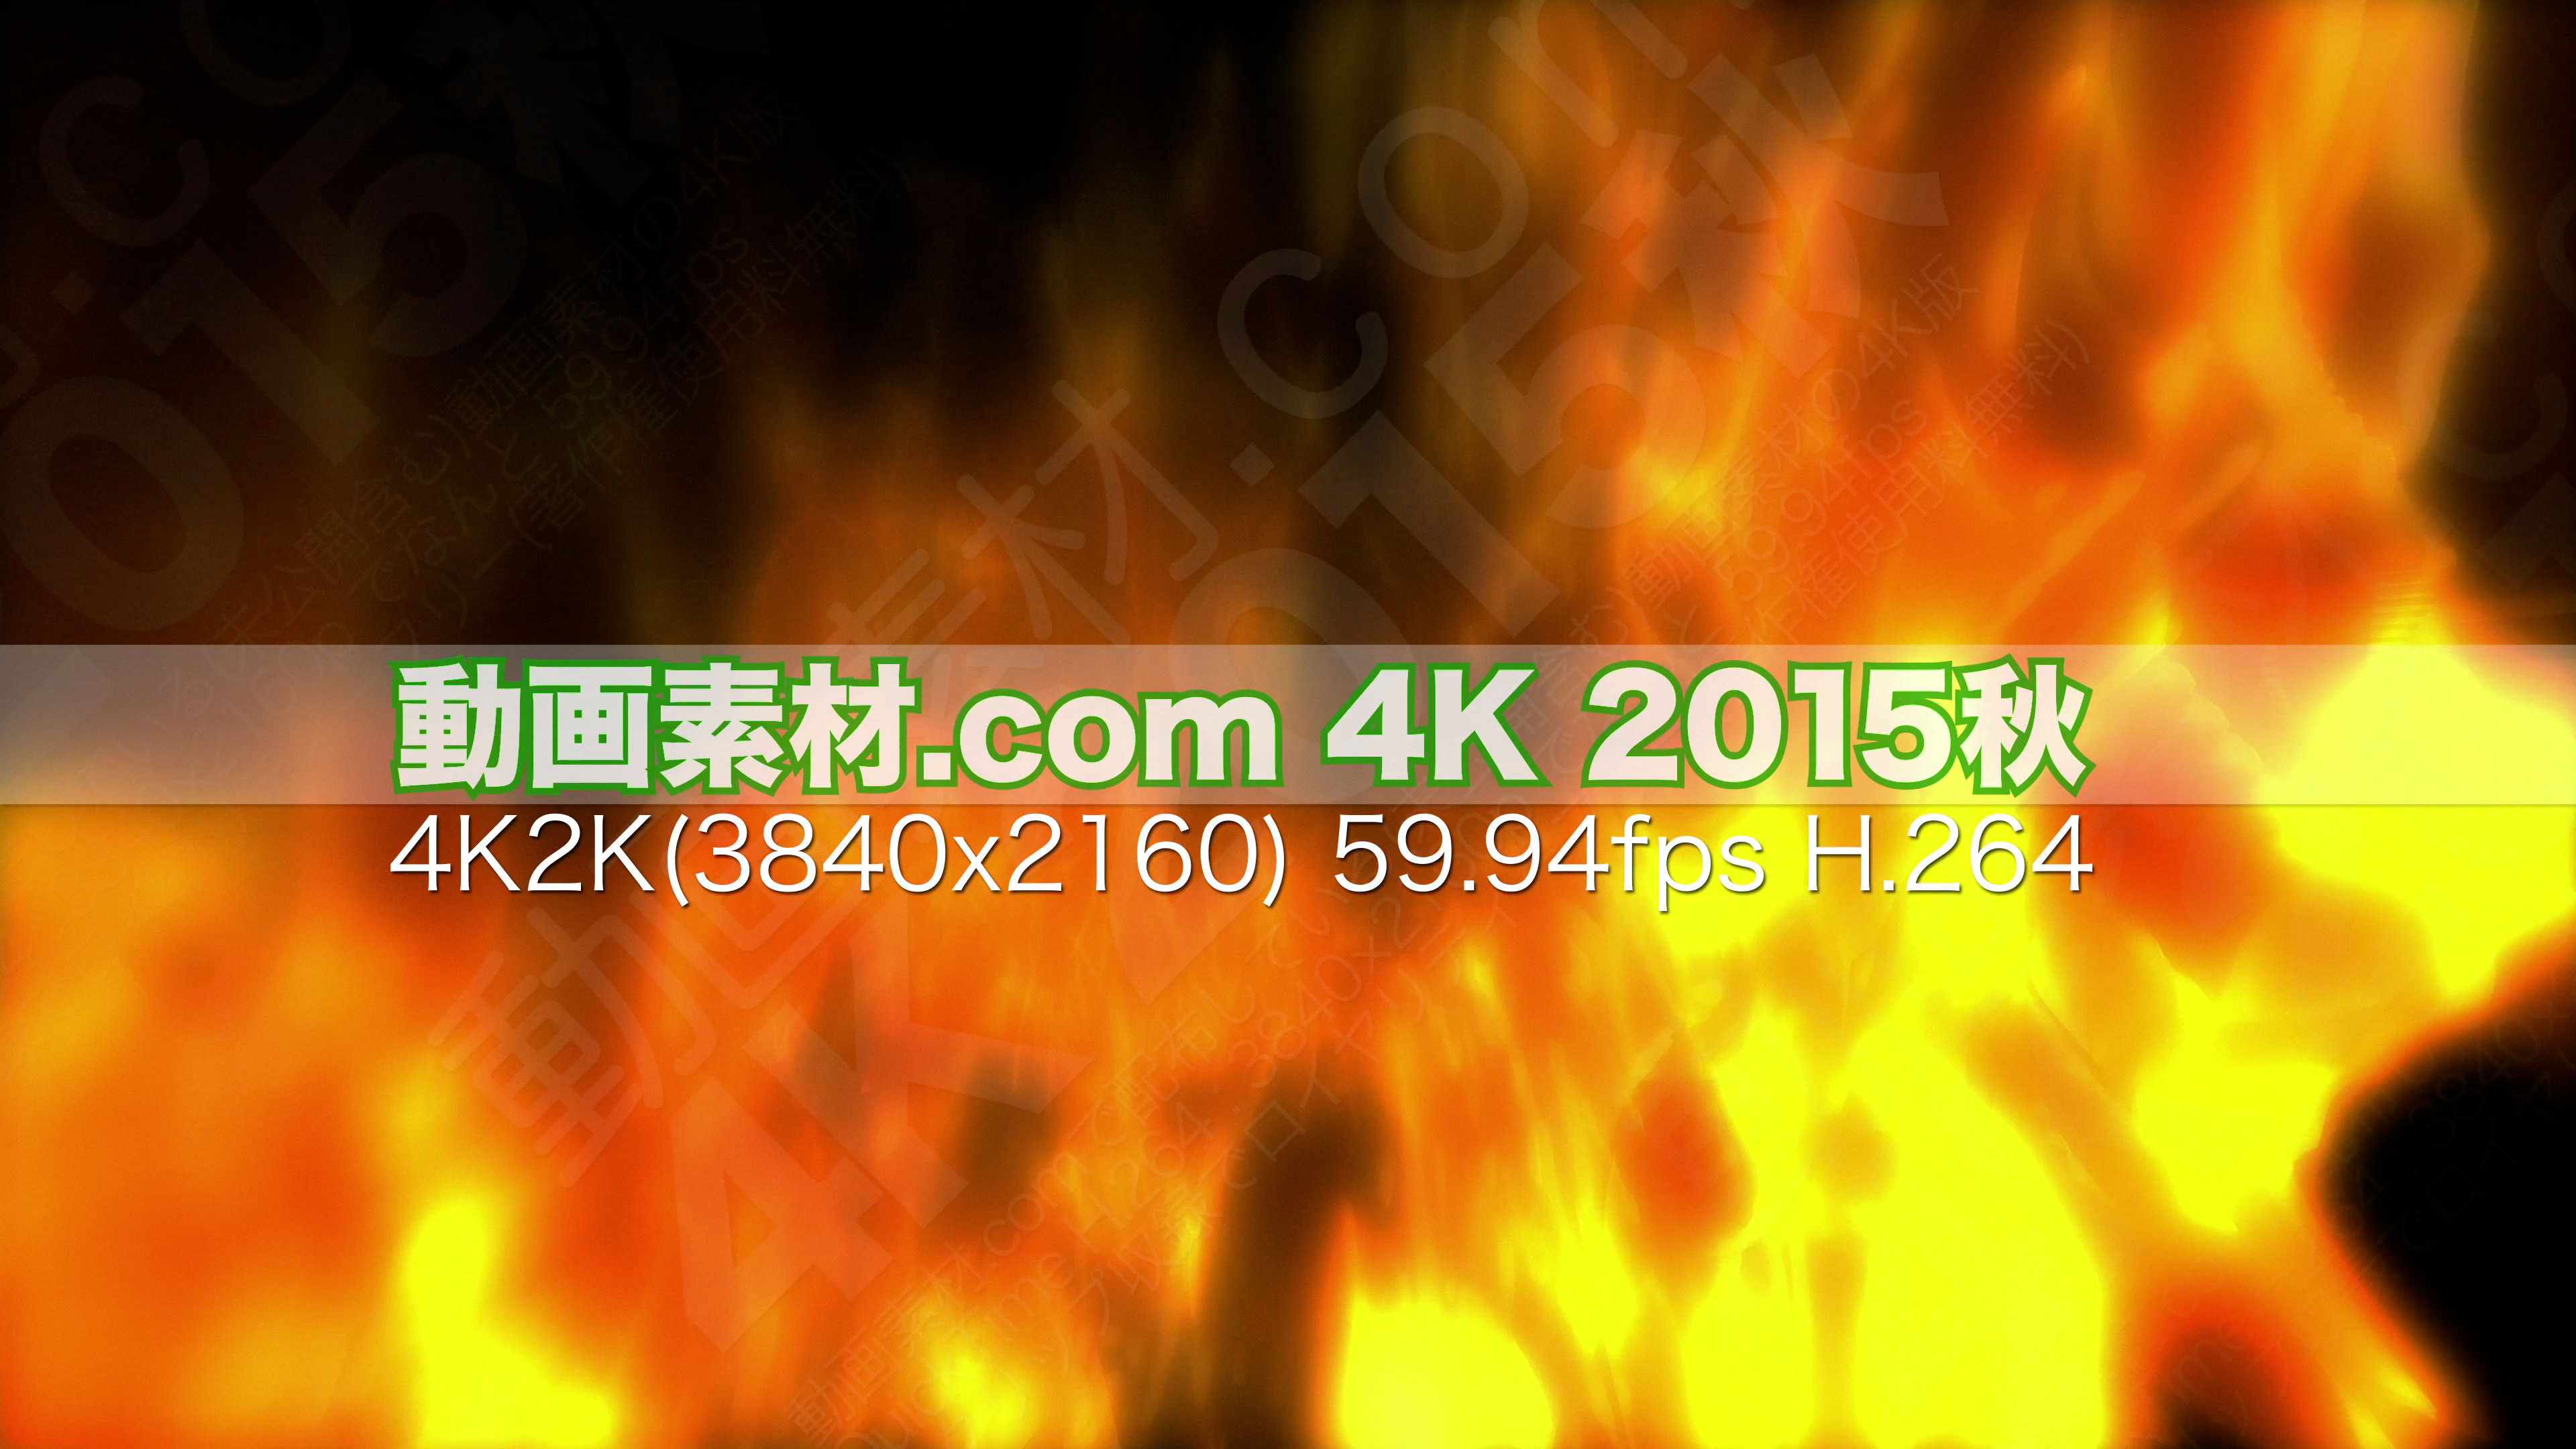 動画素材.com 4K 2015秋1 2160p 59.94fps